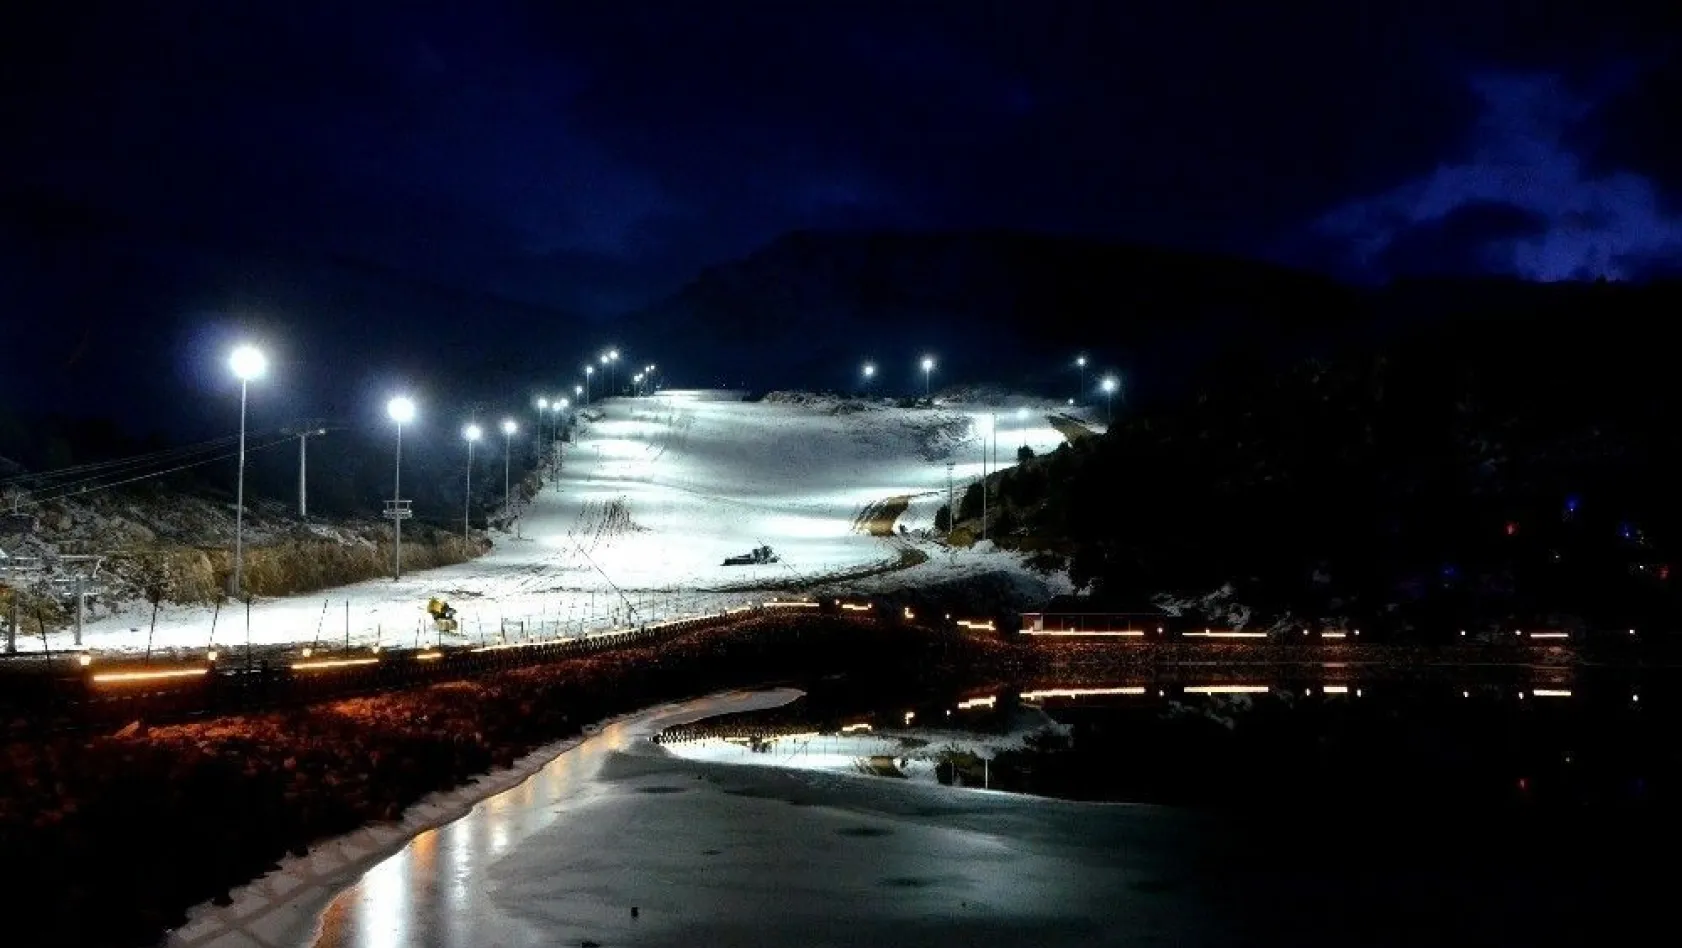 Ergan Dağı kayak merkezinin gece manzarası büyüledi
